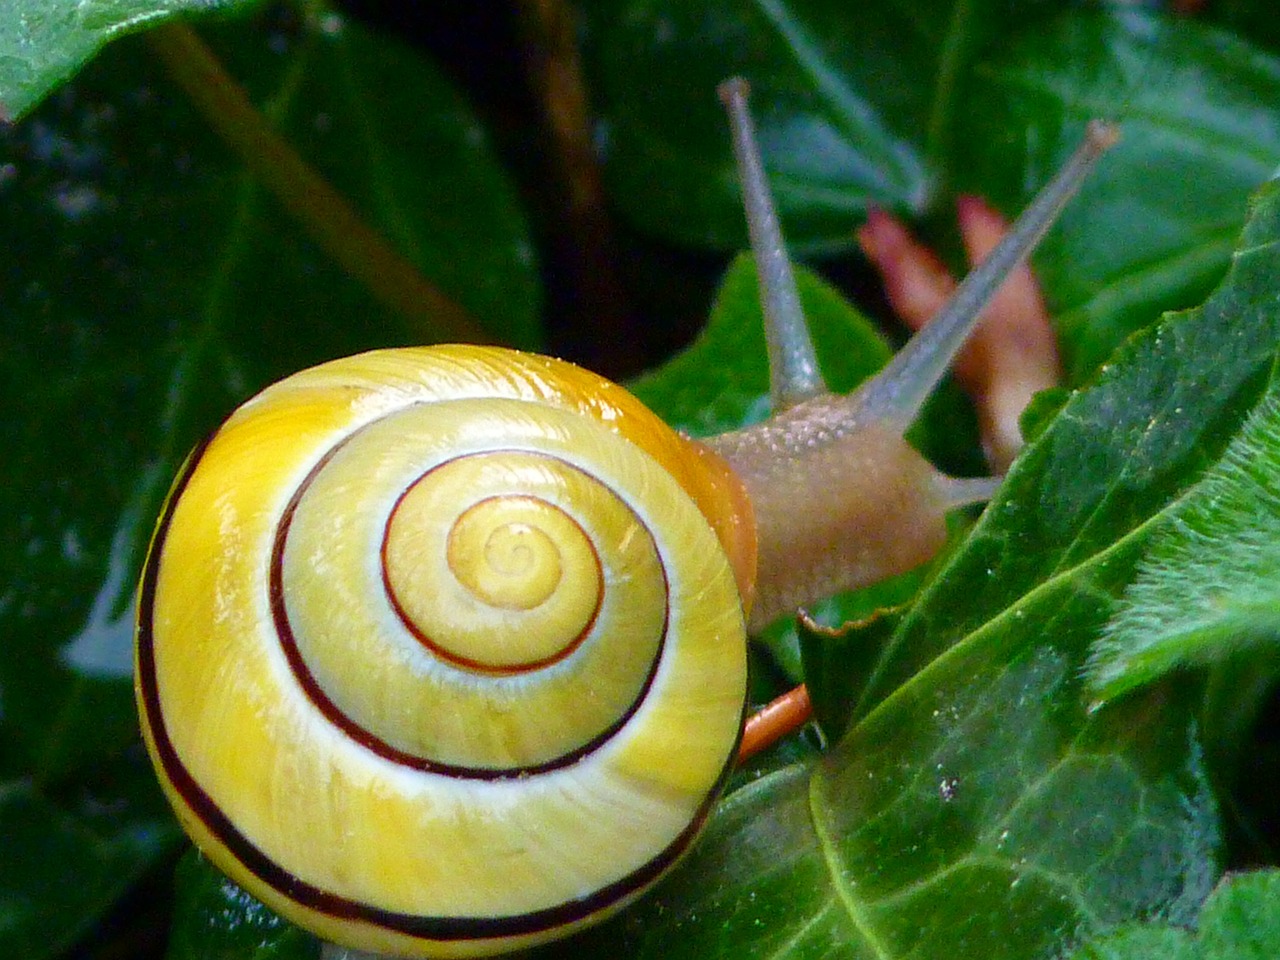 snail copse snail shell free photo